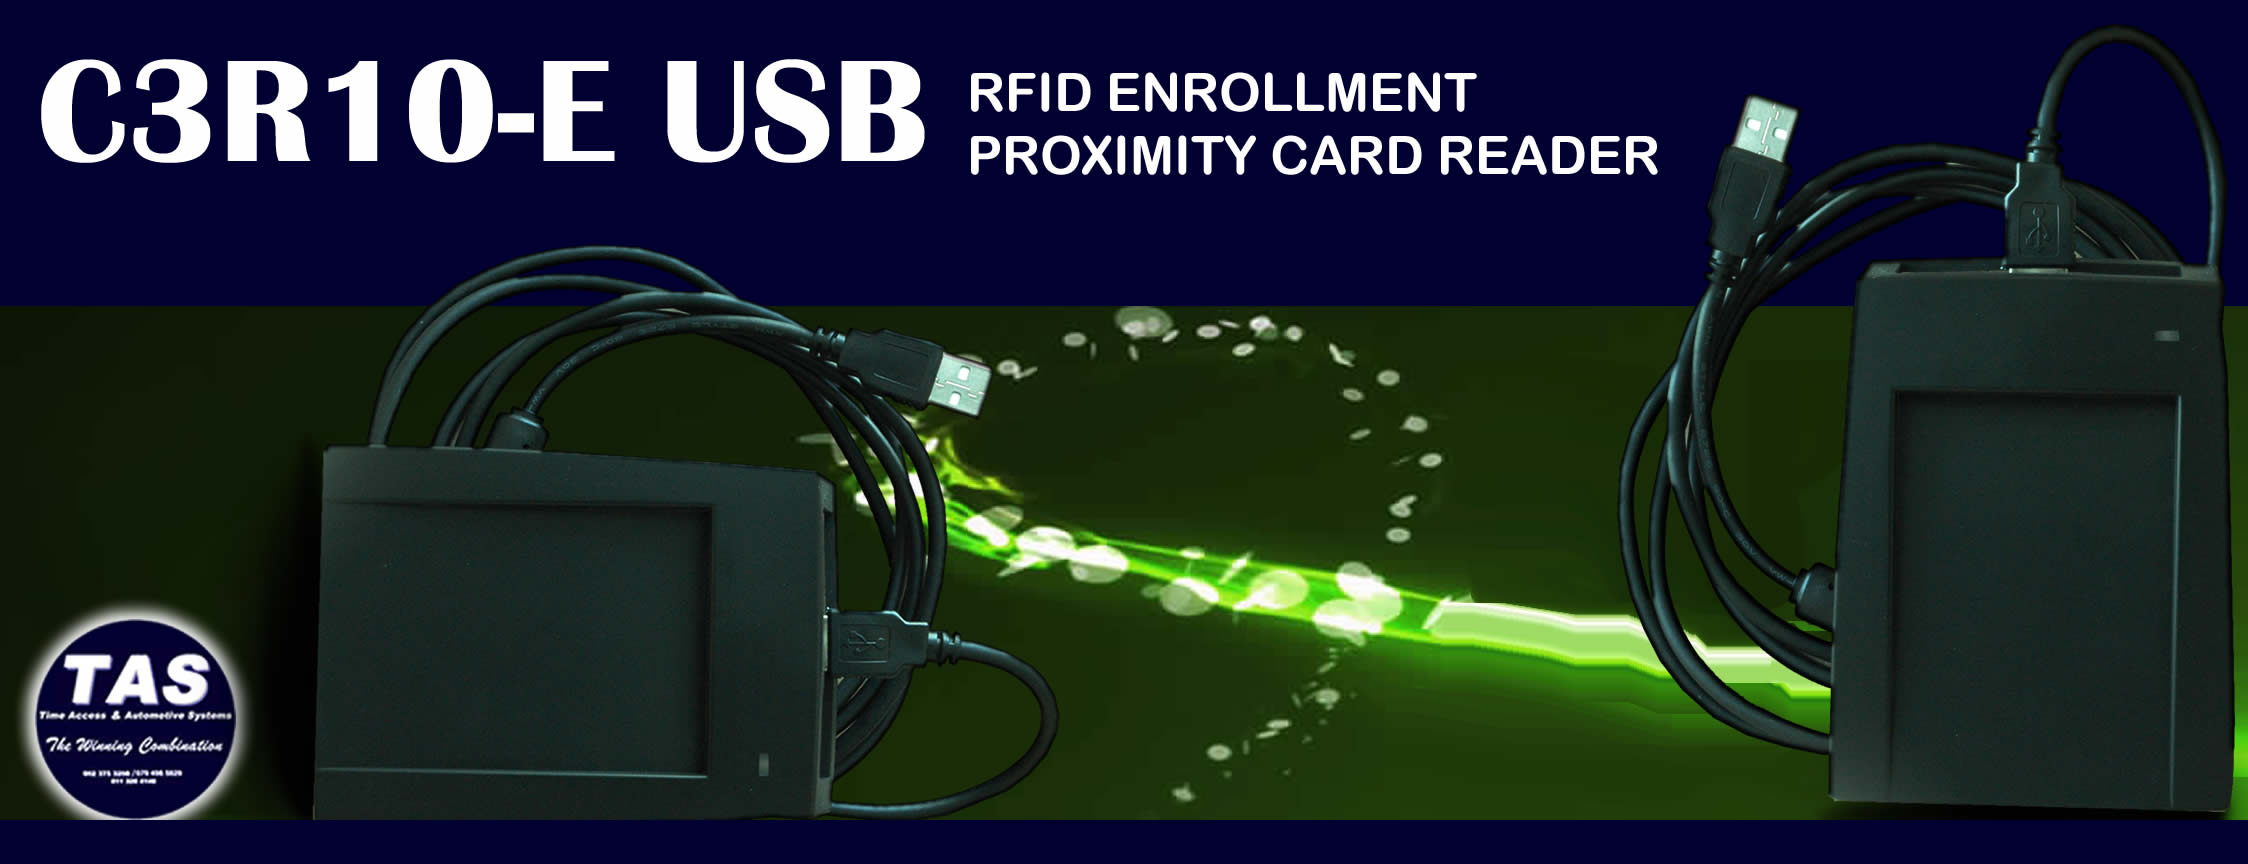 cr10e-usb-fingerprint-enrollment-reader